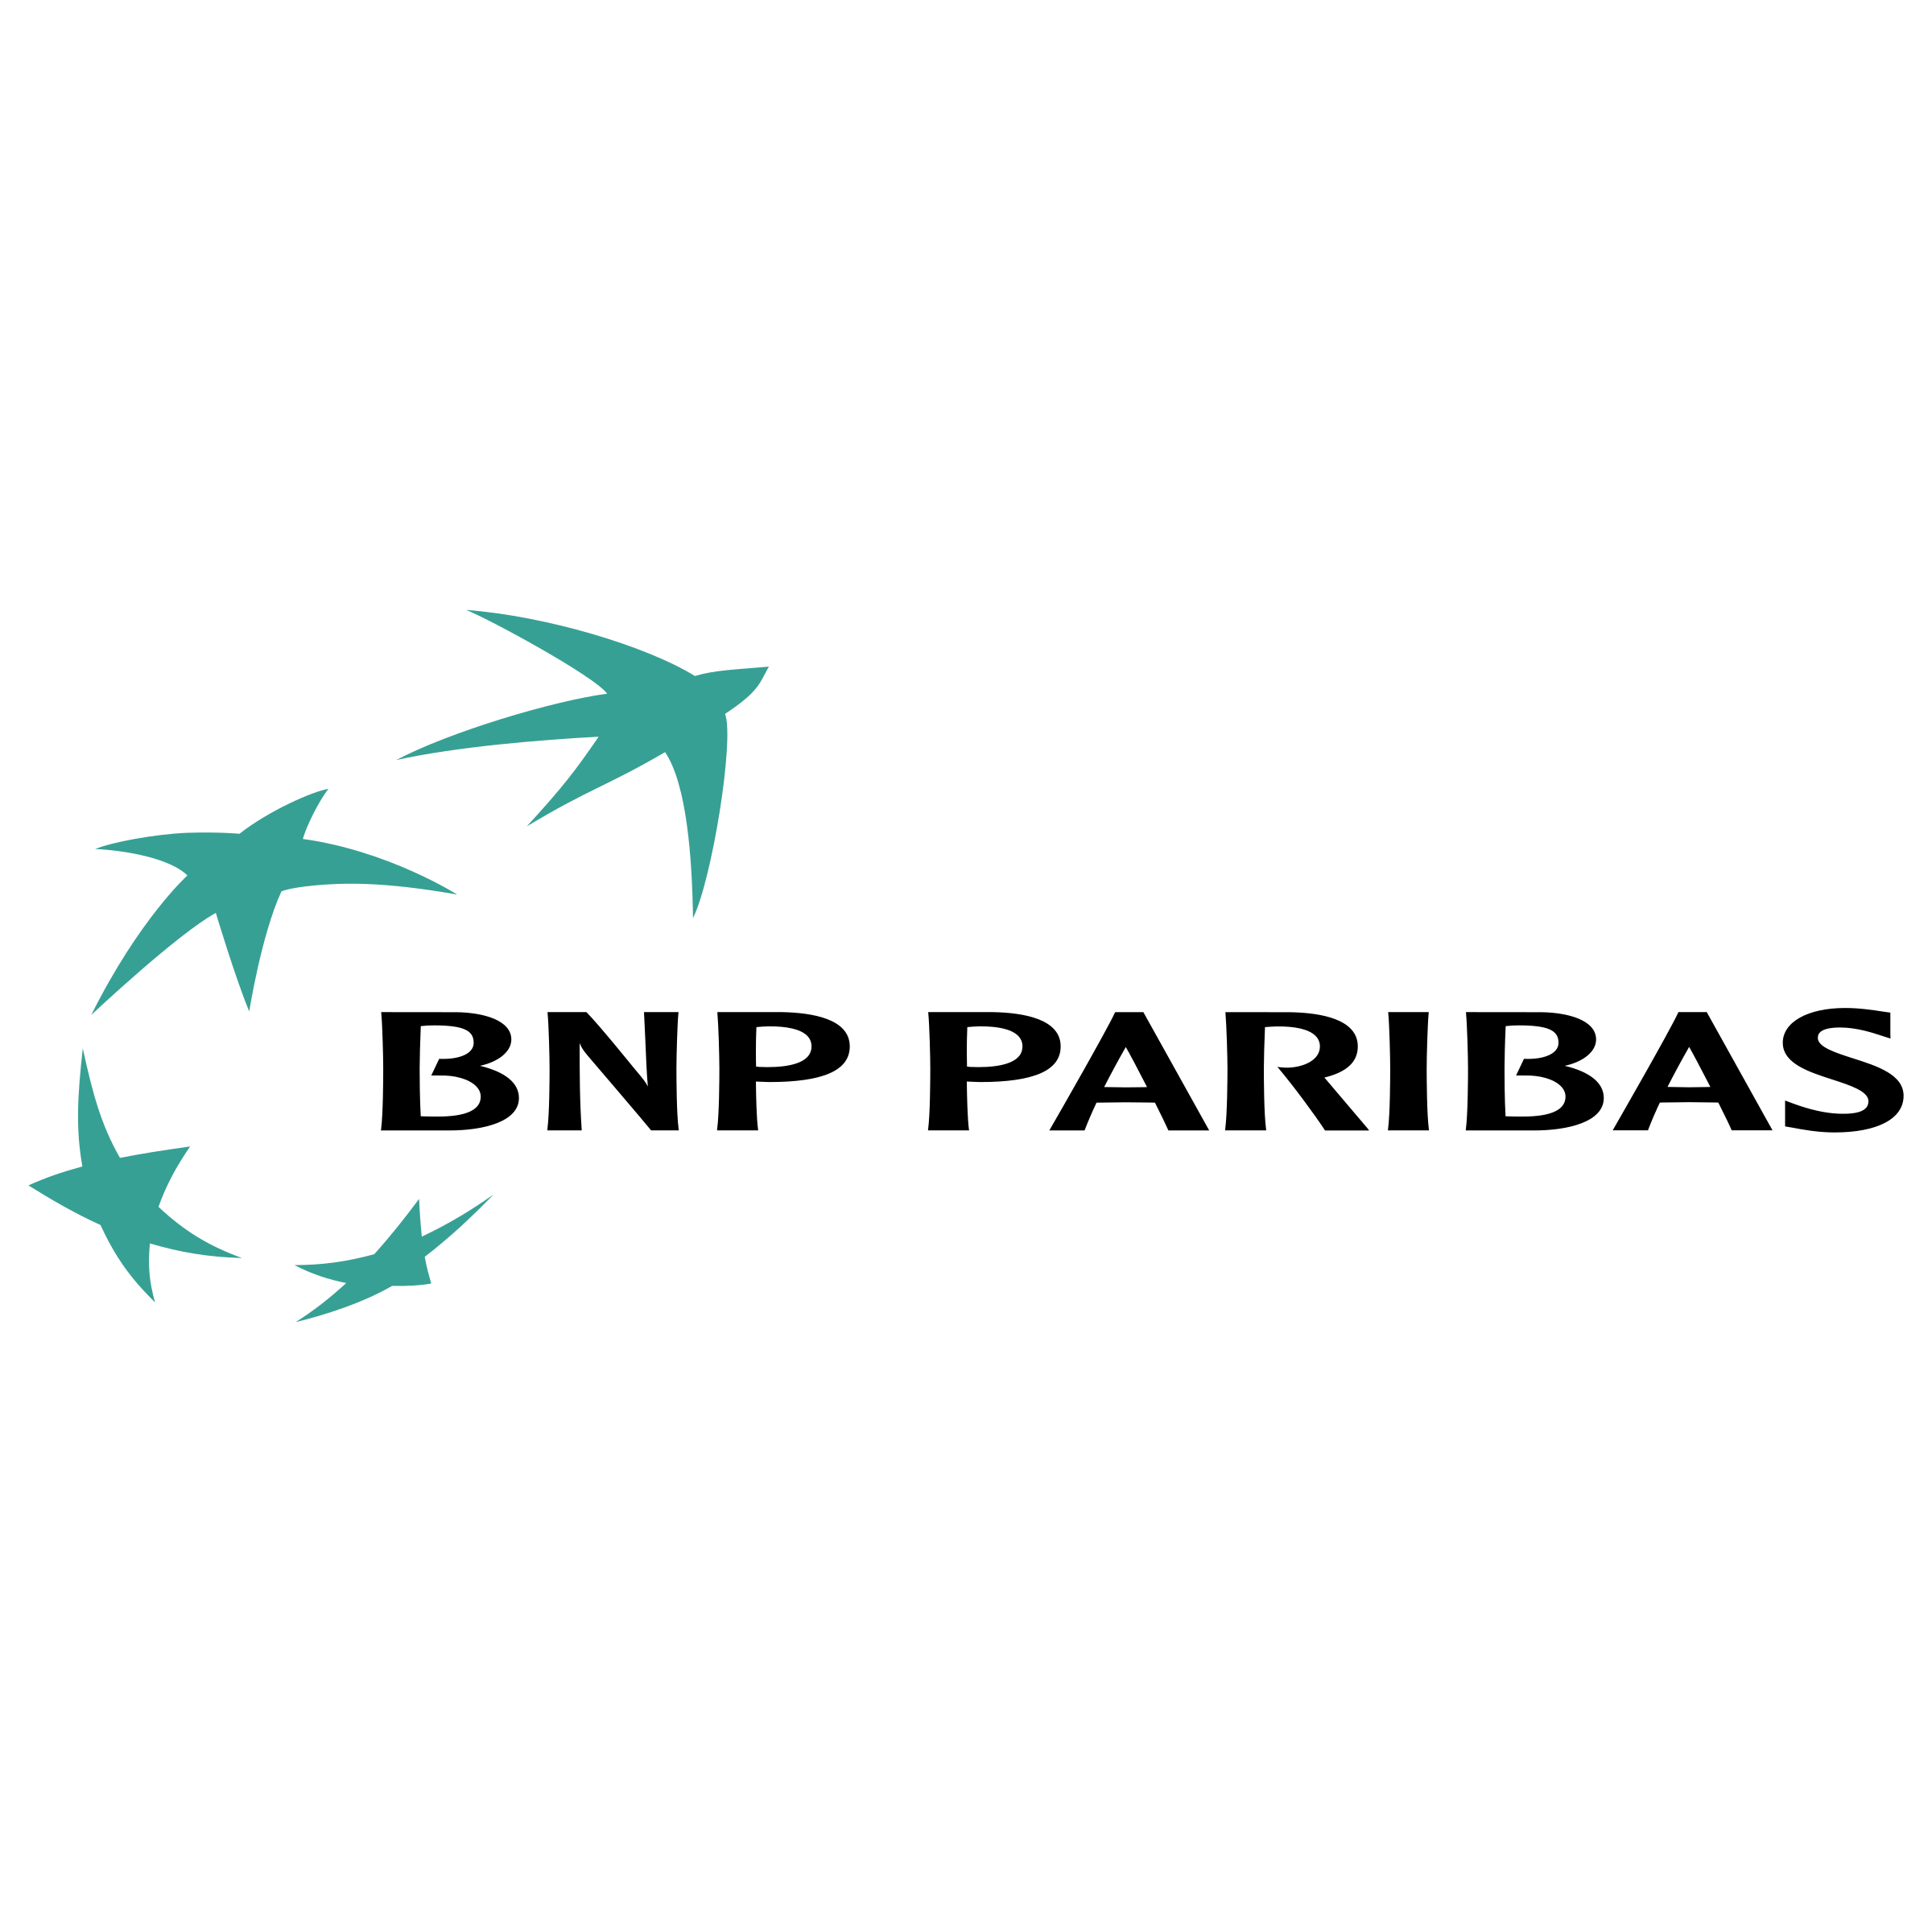 BNP Logo - BNP Paribas Logo PNG Transparent & SVG Vector - Freebie Supply